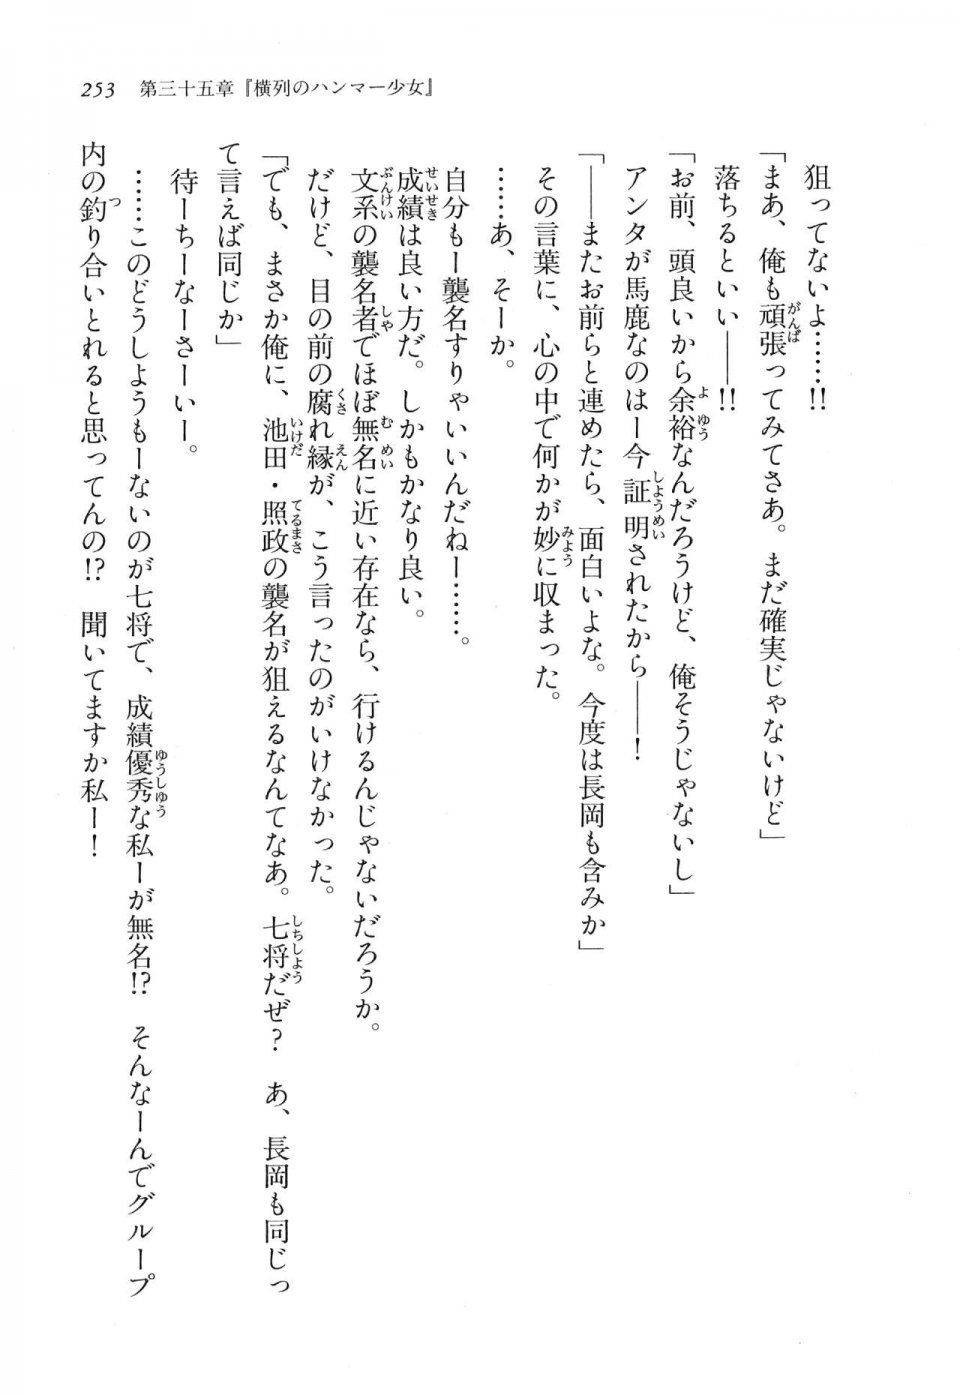 Kyoukai Senjou no Horizon LN Vol 17(7B) - Photo #253